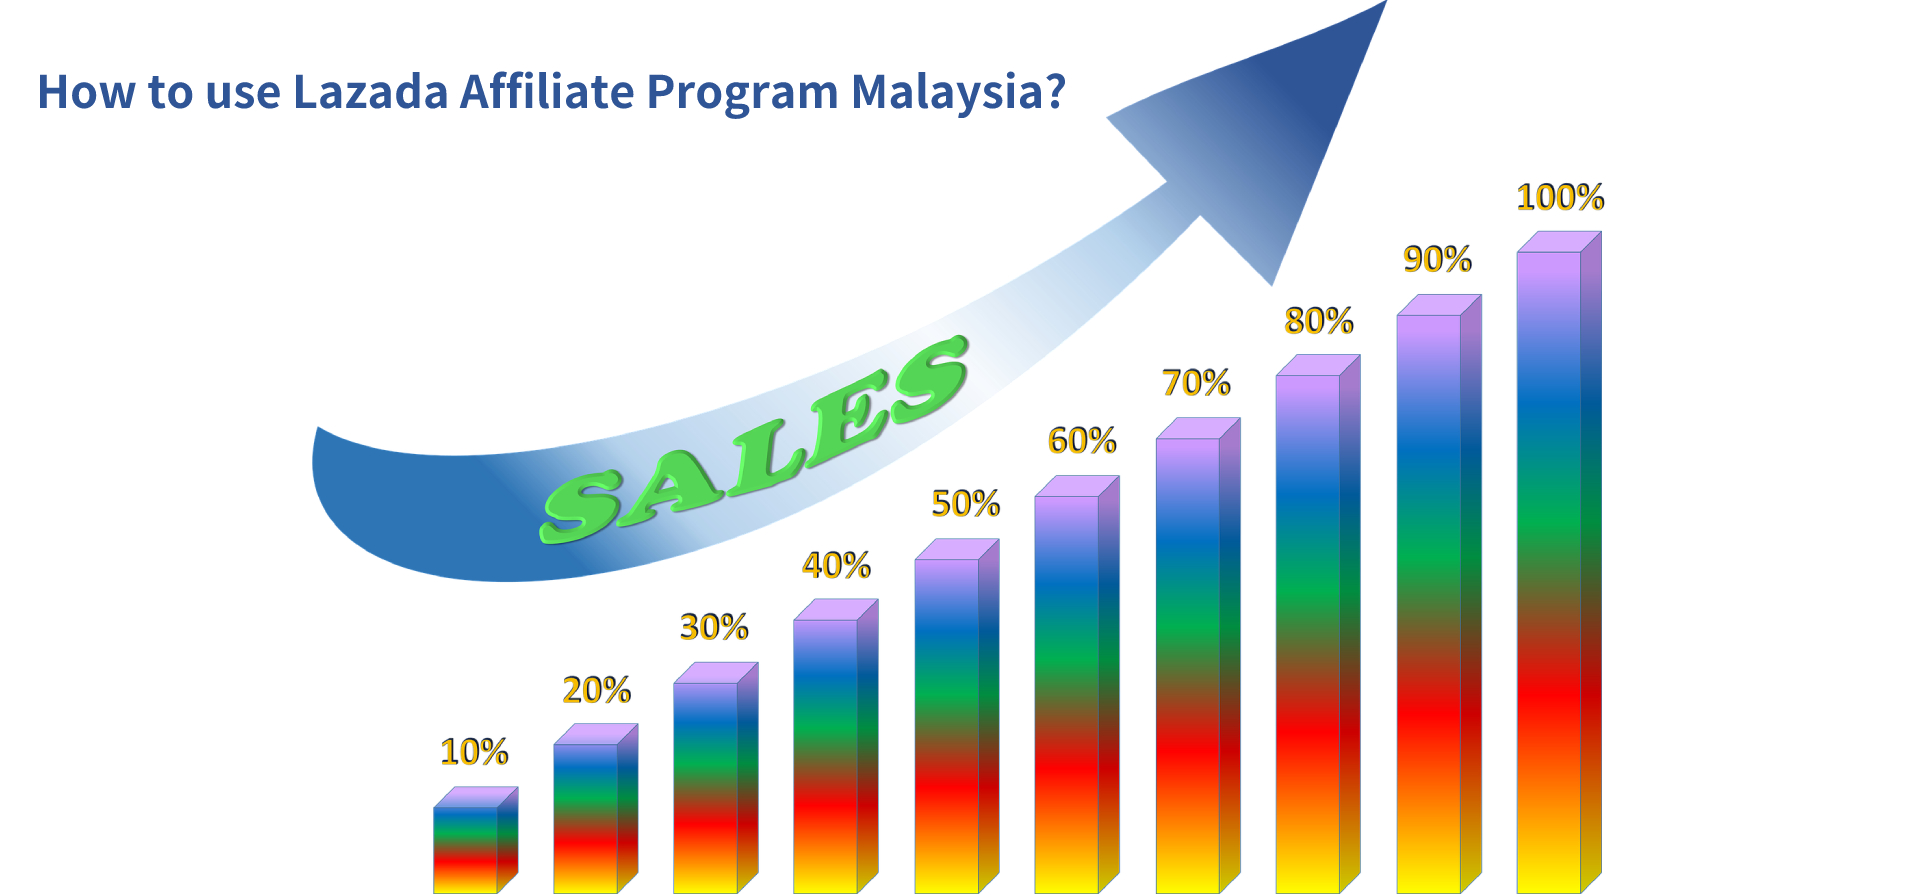 How to use Lazada Affiliate Program Malaysia?